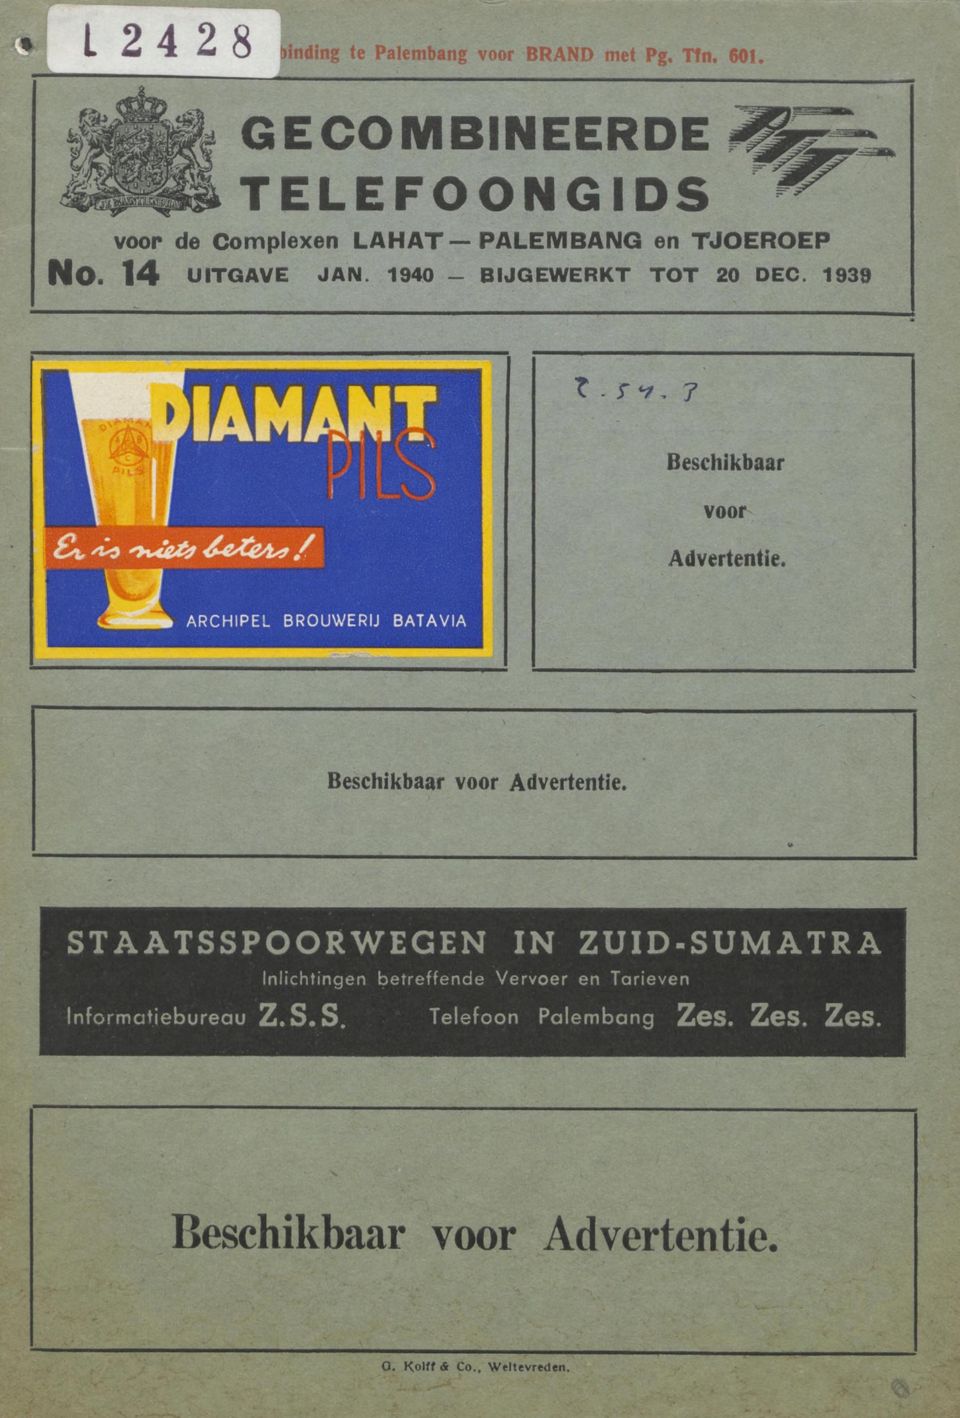 1940 - BIJGEWERKT TOT 20 DEC. 1939 Beschikbaar voor HhRHp Advertentie. Beschikbaar voor Advertentie.